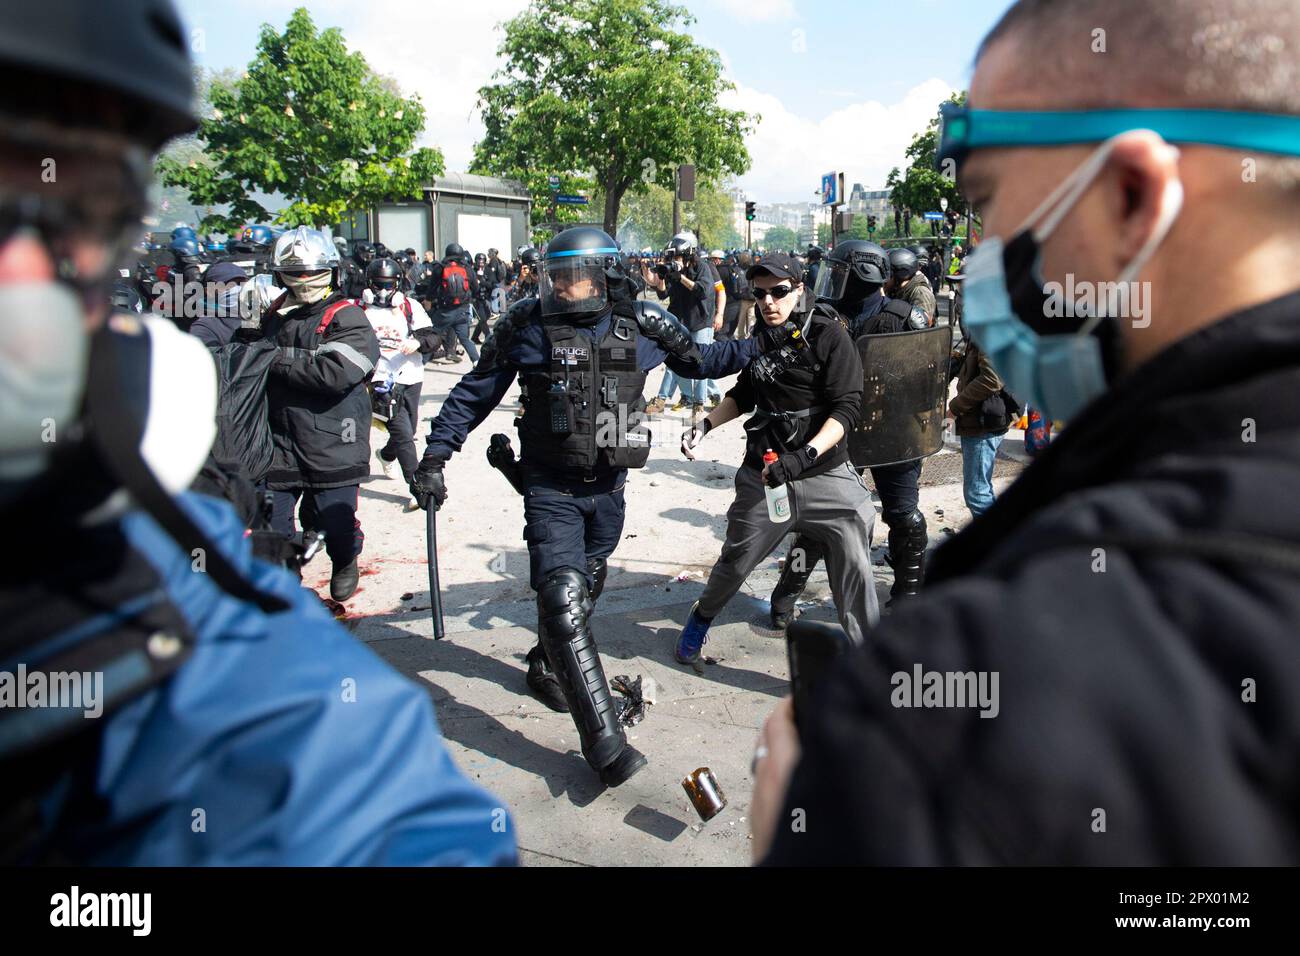 Affrontements entre manifestants et police française lors des émeutes de Mayday du 1 mai 2023 dans le centre de Paris. Beaucoup de gens se sont présentés pour exprimer leur aversion pour le président Macron et ses politiques actuelles. Officier de police français entouré de manifestants portant des masques. Banque D'Images